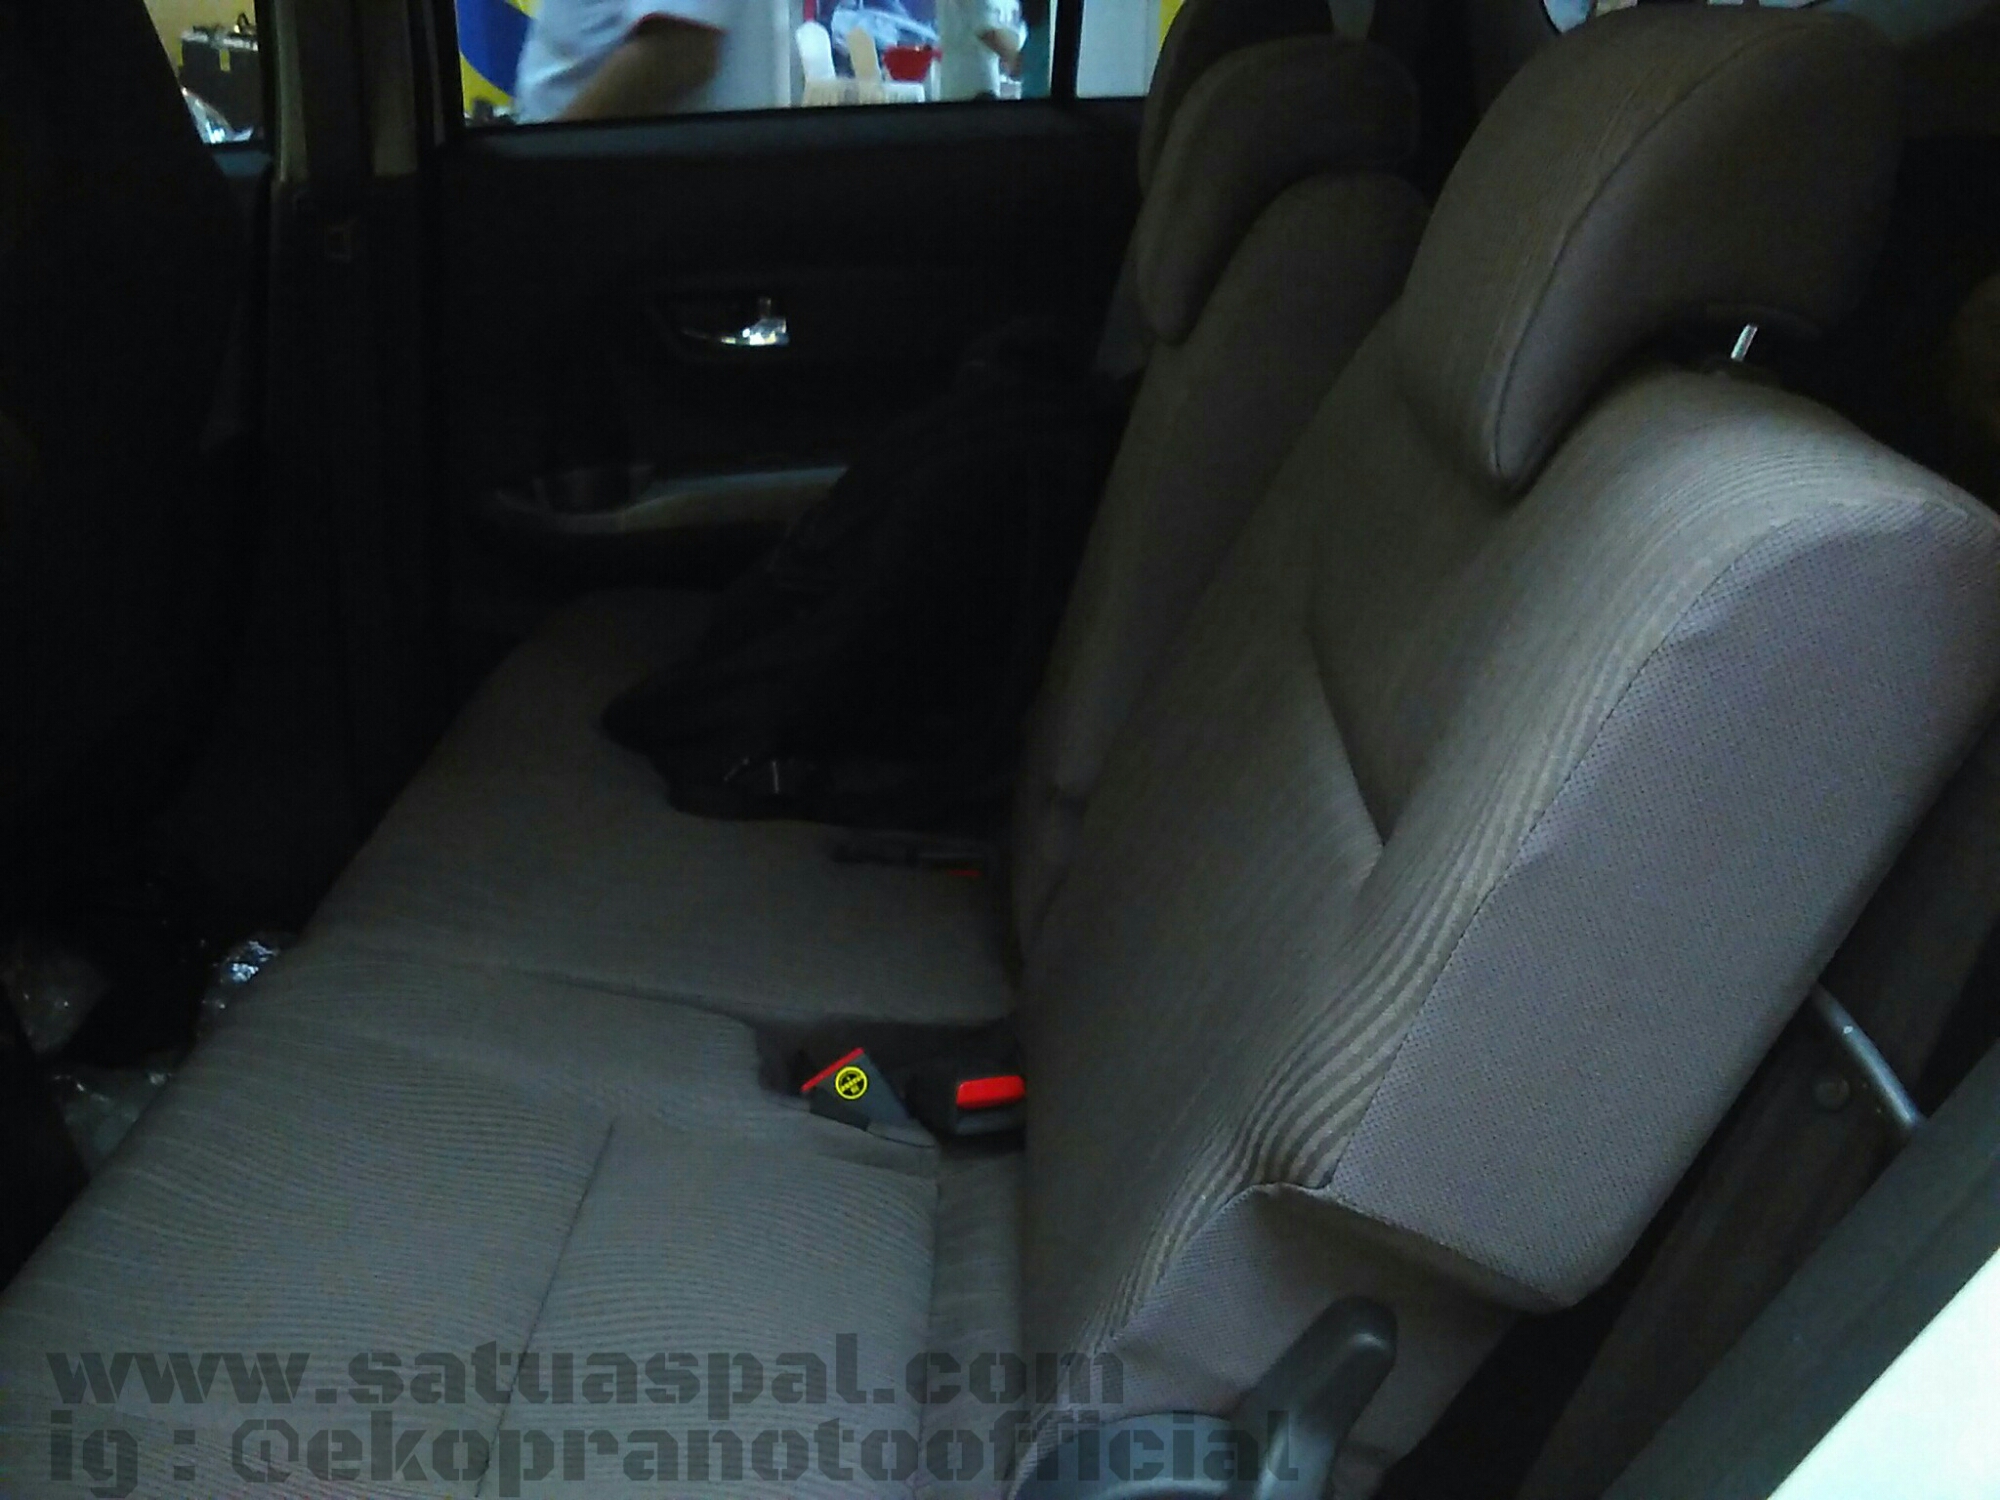 Simulasi Kredit Toyota Calya Harga Murah DP Mulai 16 Jutaan Saja